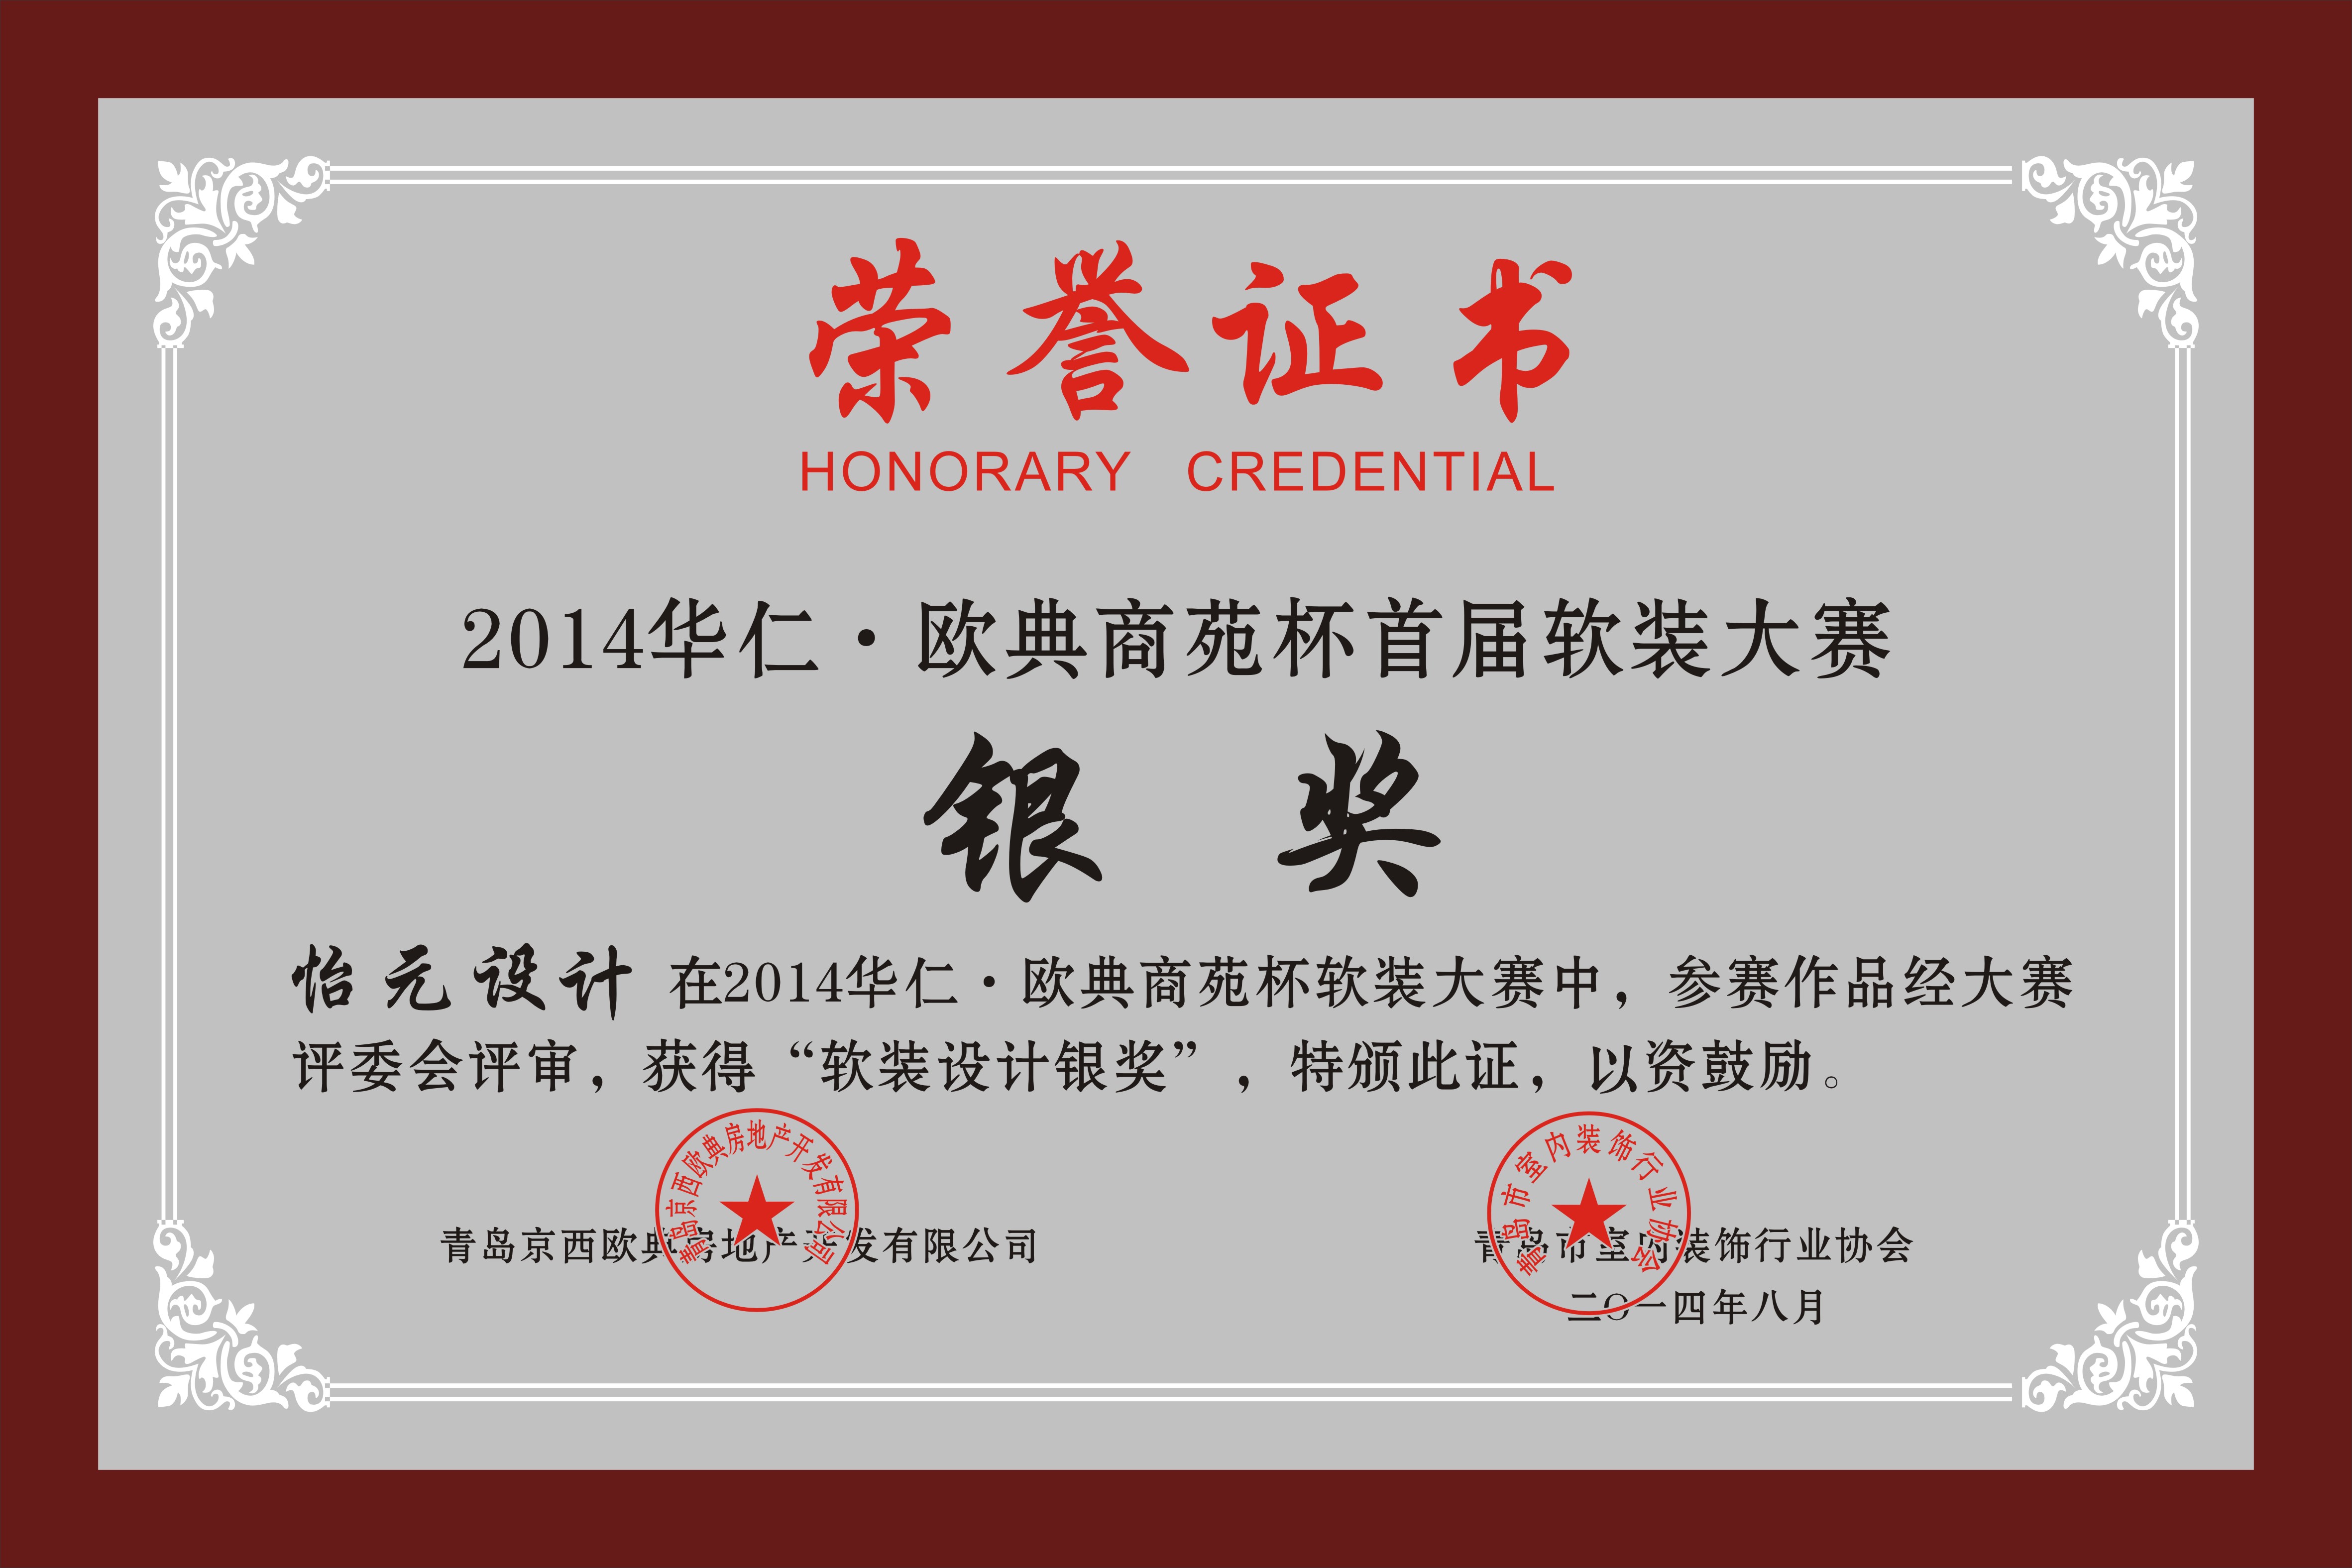 2014華仁歐典商苑杯軟裝大賽銀獎榮譽證書